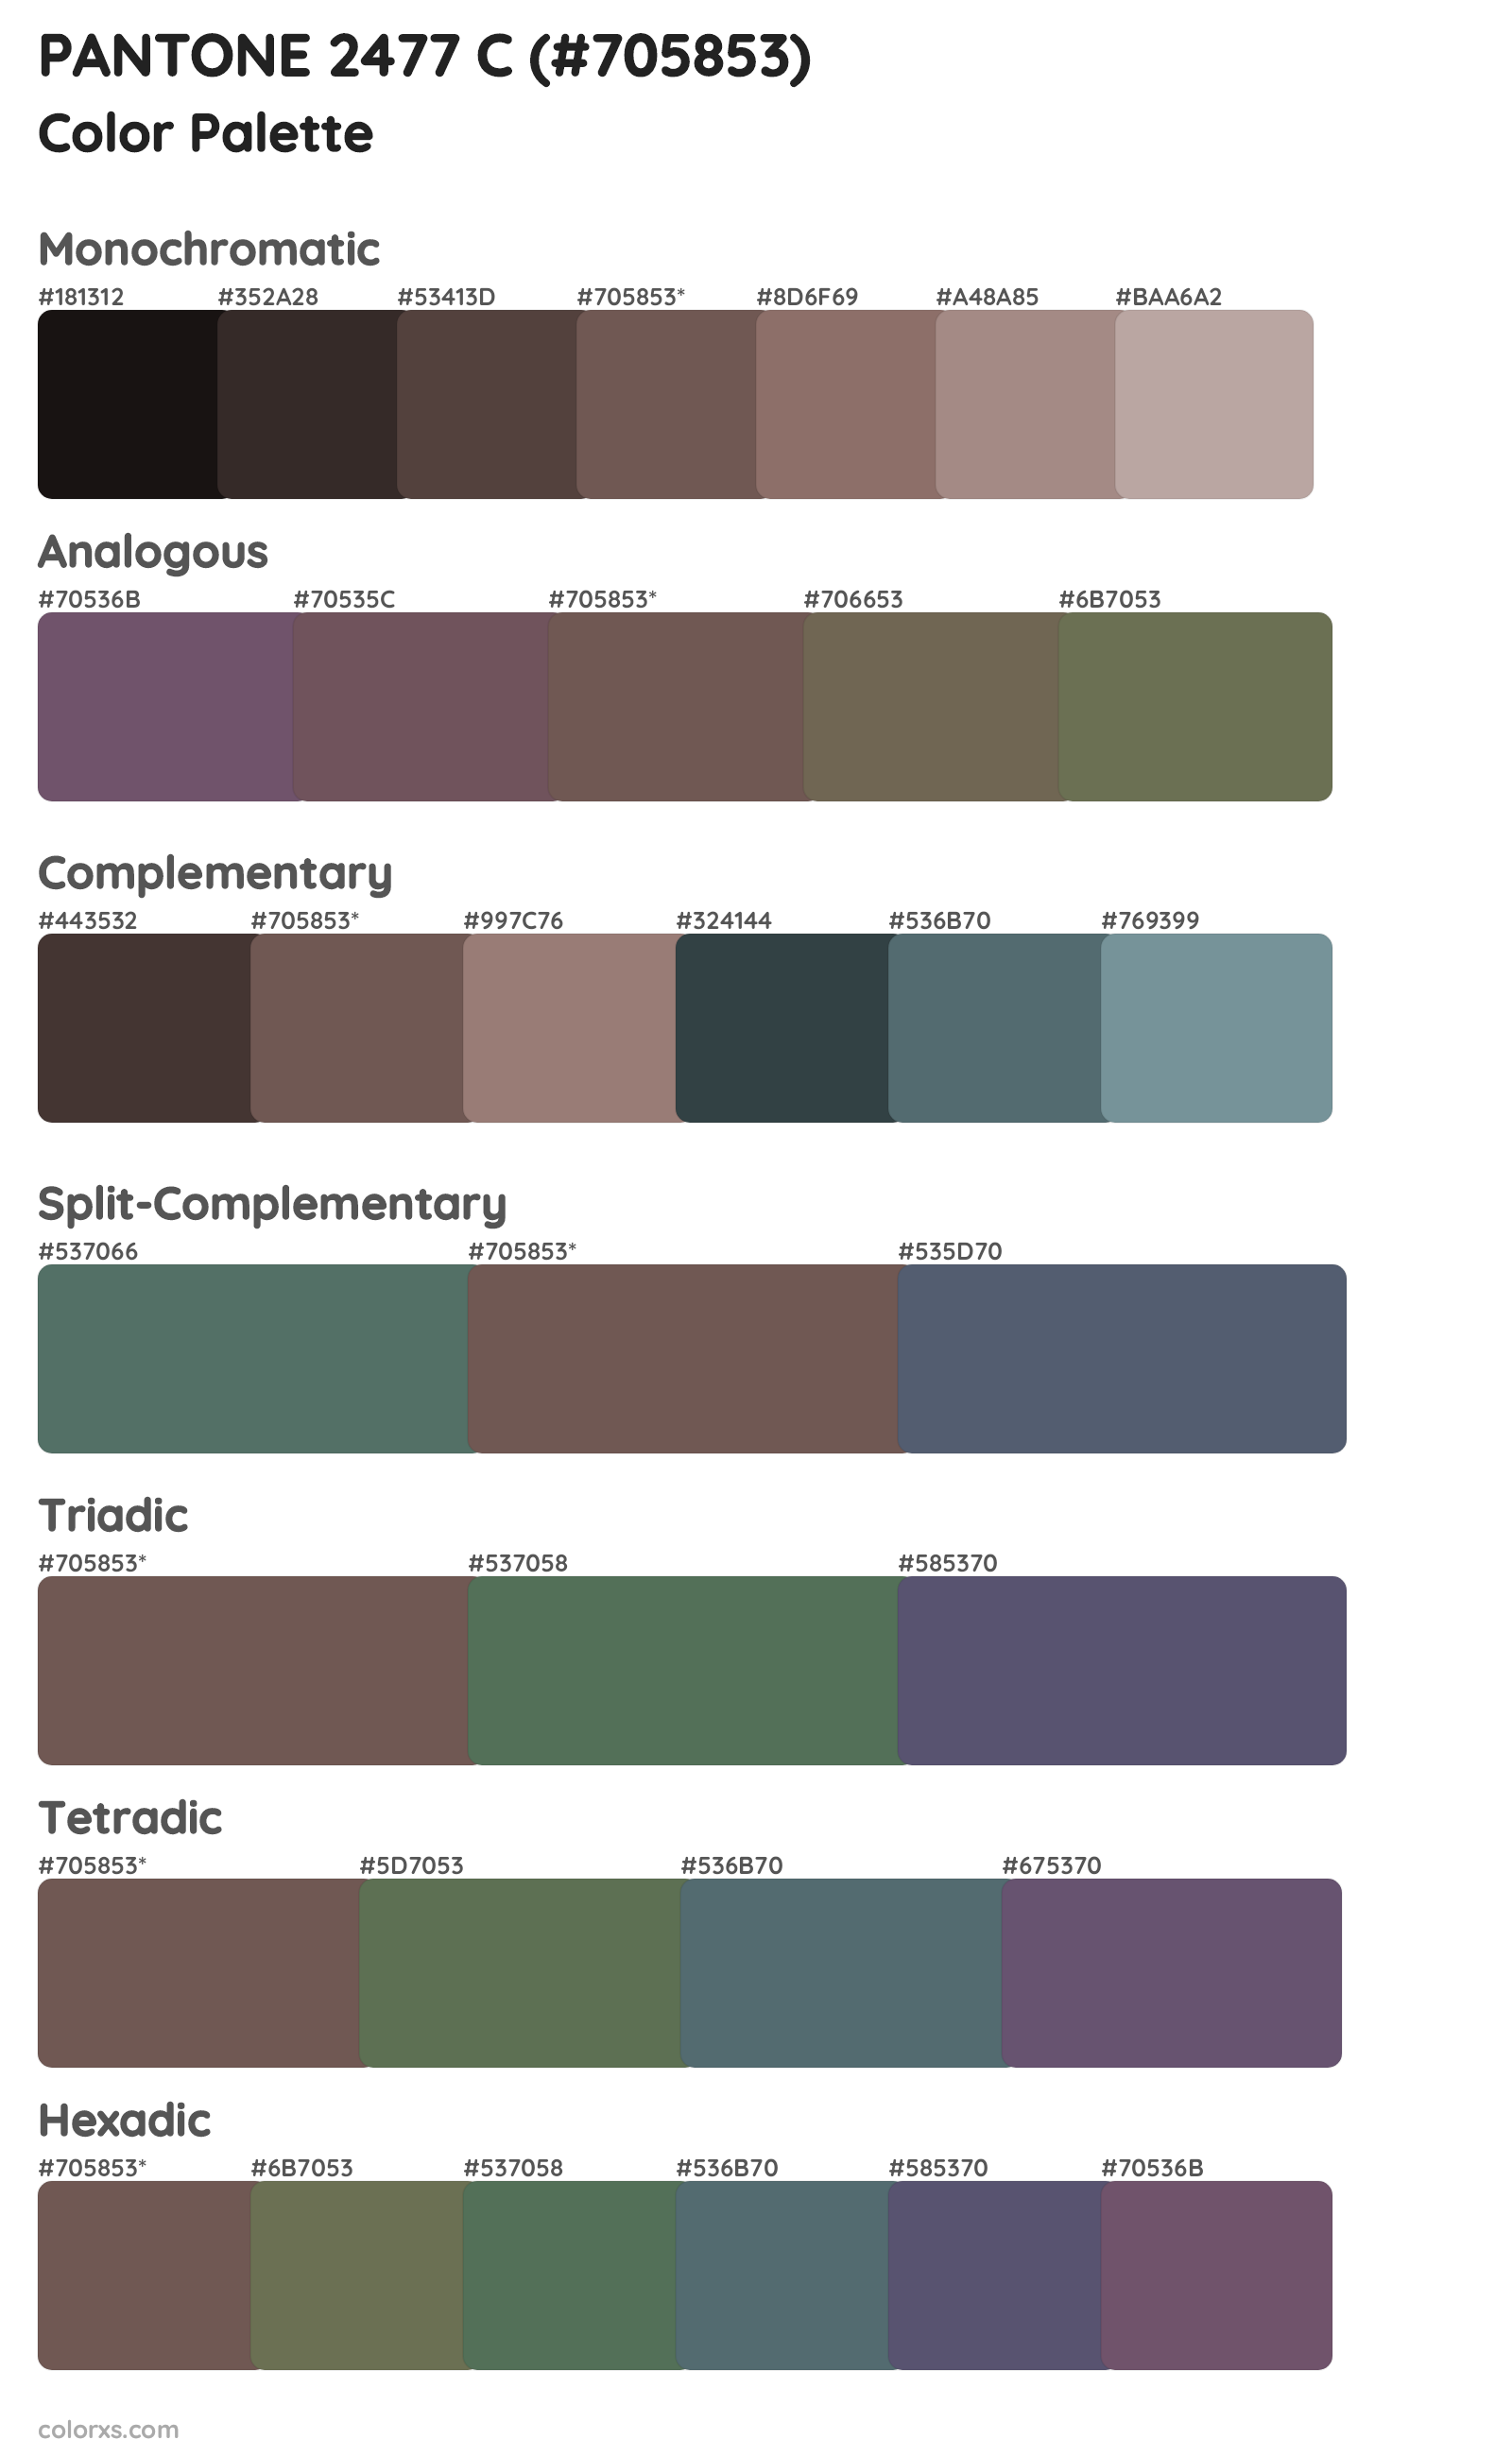 PANTONE 2477 C Color Scheme Palettes